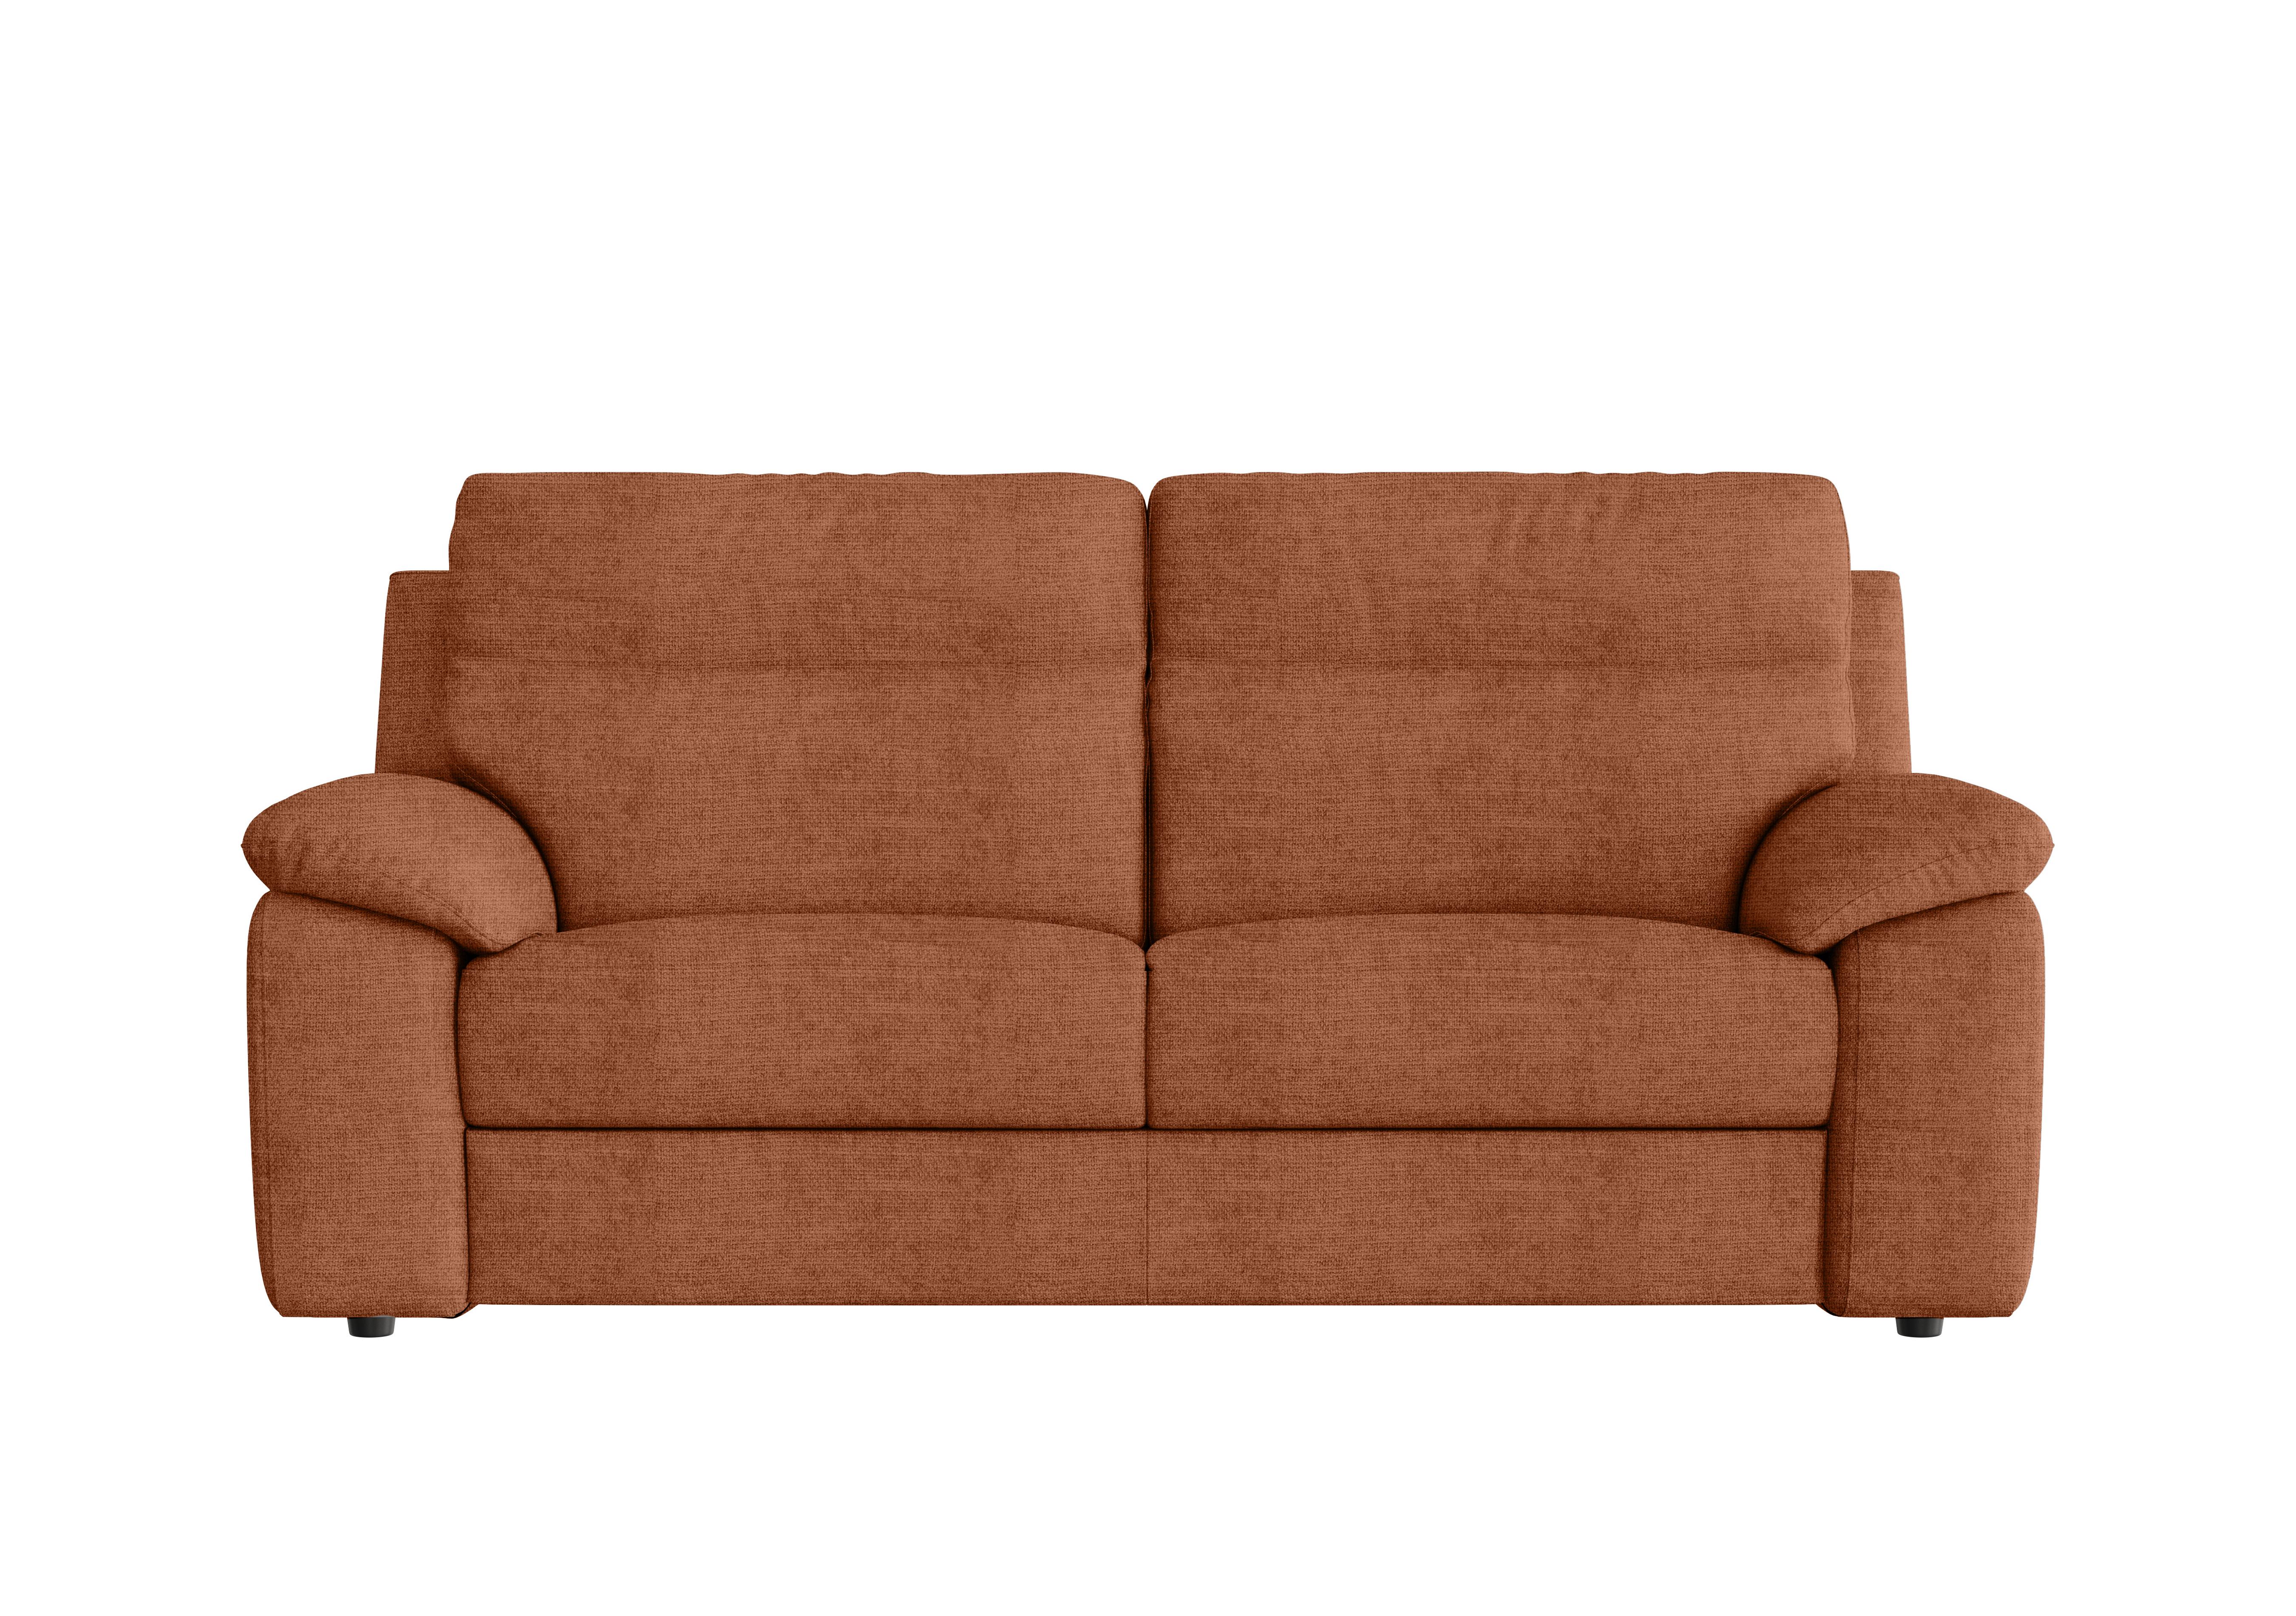 Pepino 3 Seater Fabric Sofa in Baobab Ruggine 549 on Furniture Village